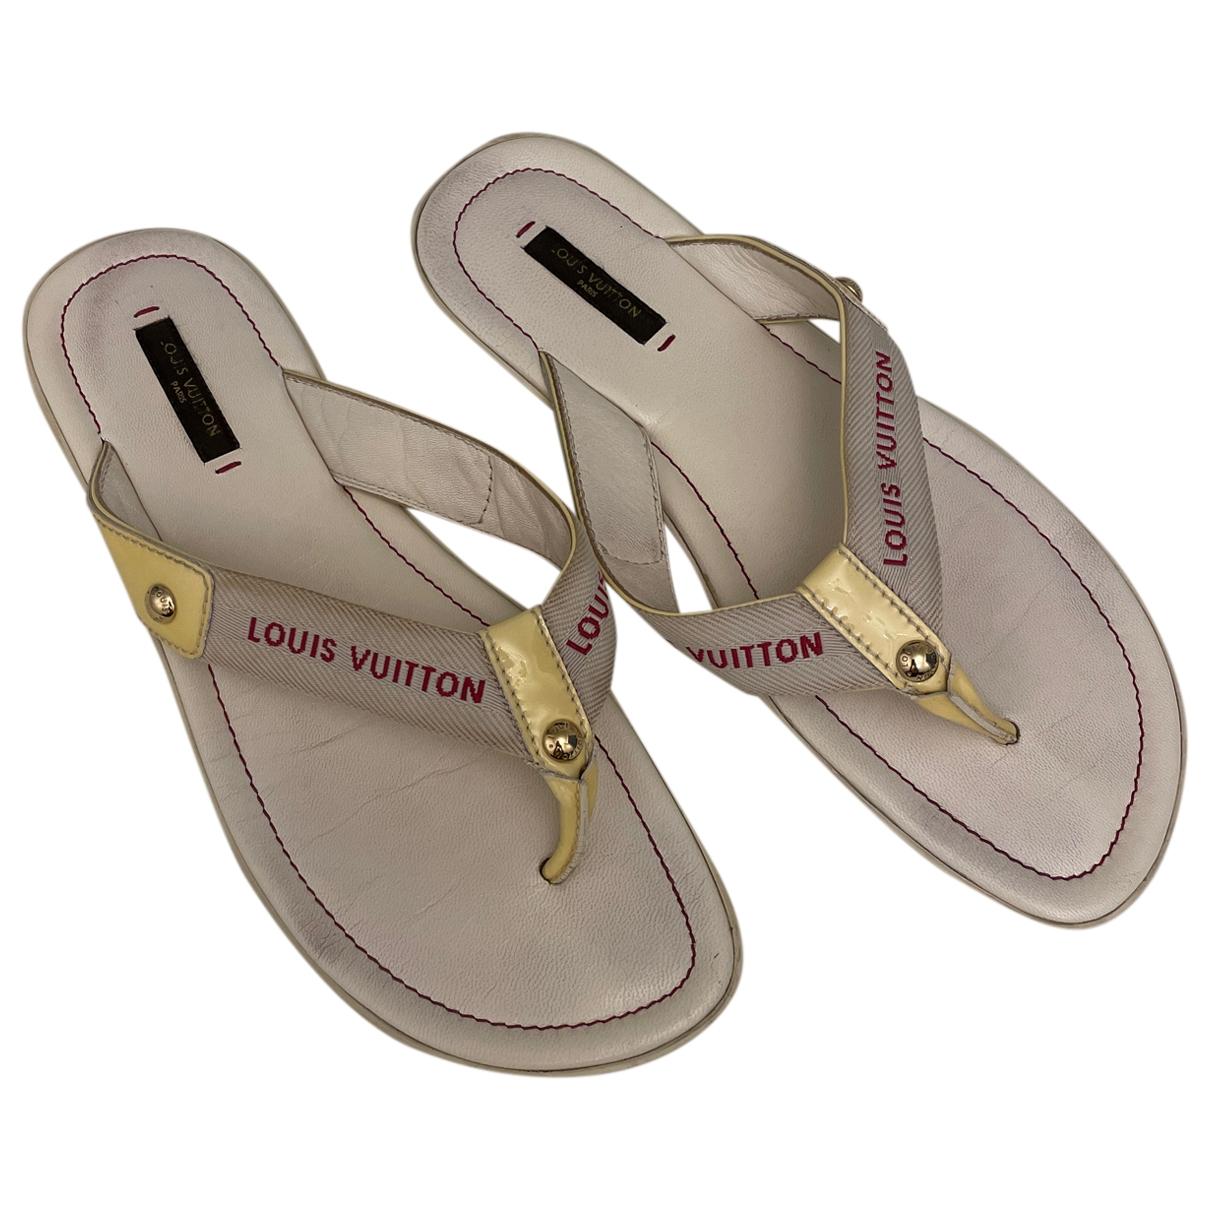 LOUIS VUITTON Monogram Leather Flip-Flop Flat WMNS Sandal w/Box EUR 35 Pink  USED